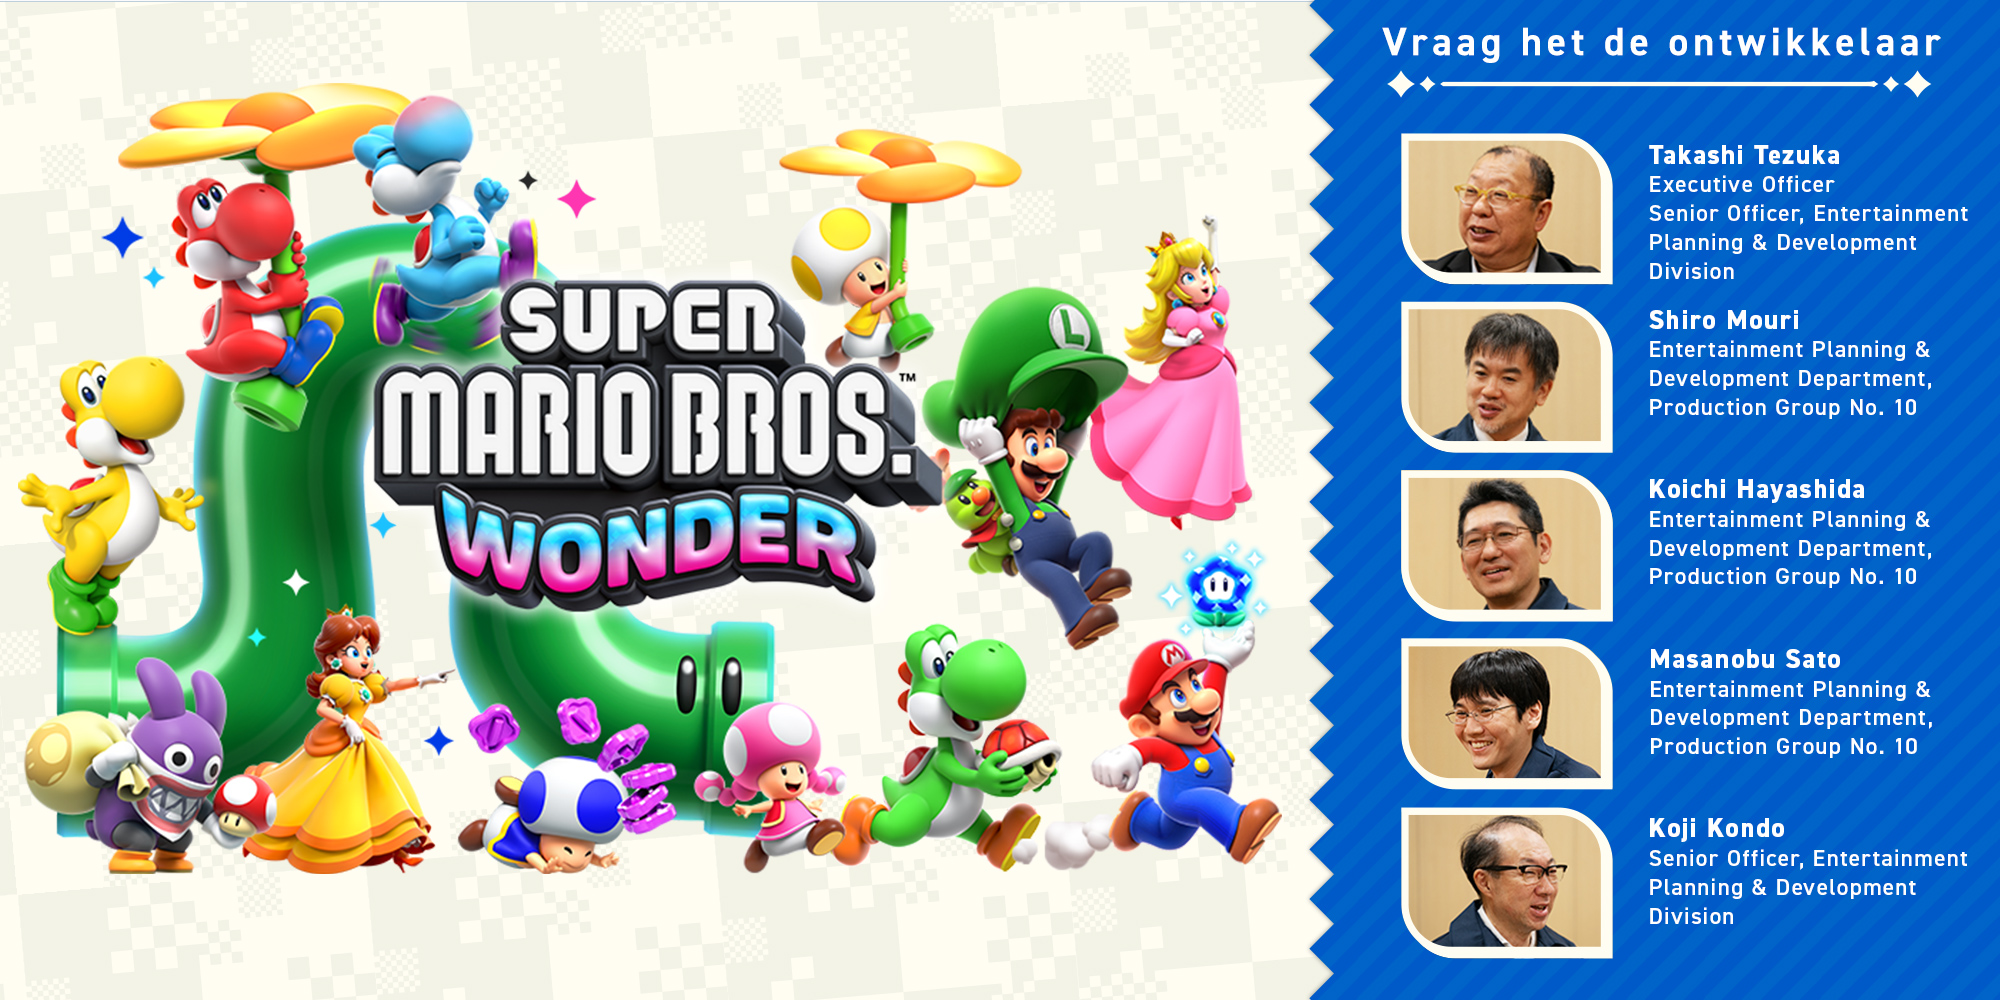 Vraag het de ontwikkelaar Vol. 11, Super Mario Bros. Wonder – Hoofdstuk 2